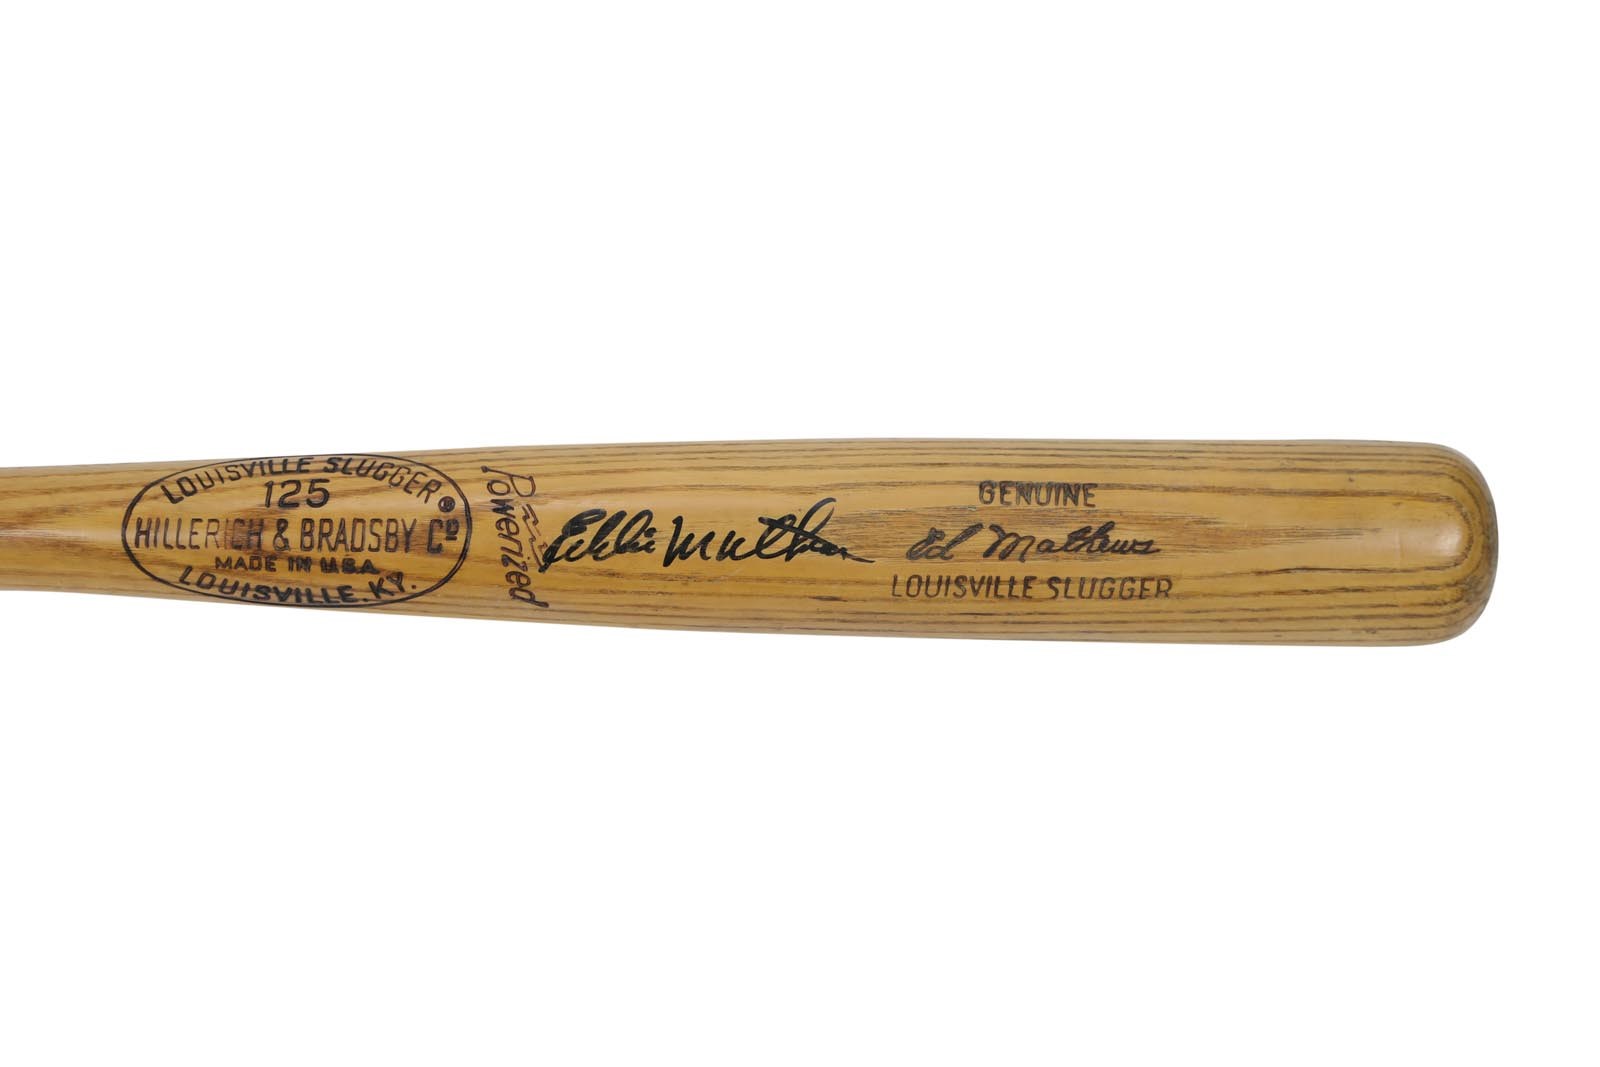 Circa 1968 Eddie Mathews Game Used Signed Bat (PSA 8)